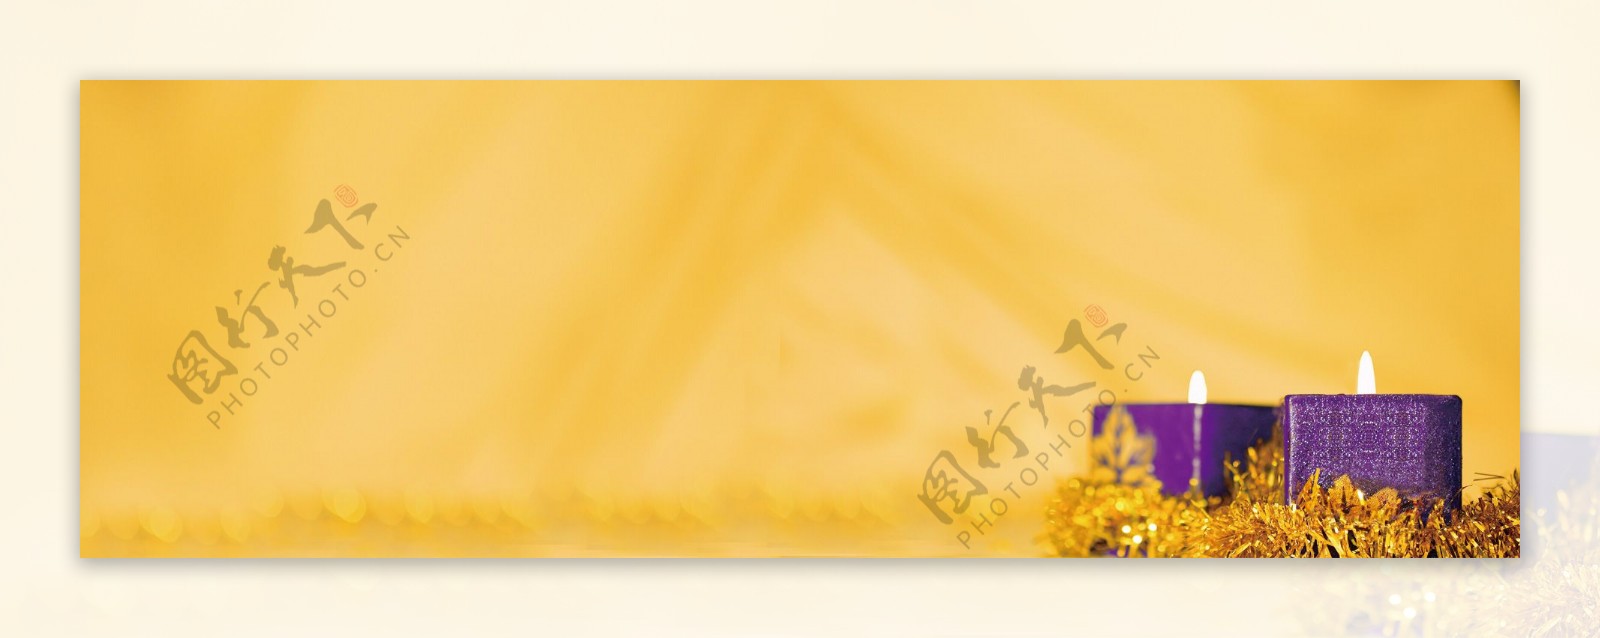 教师节蜡烛黄色背景banner